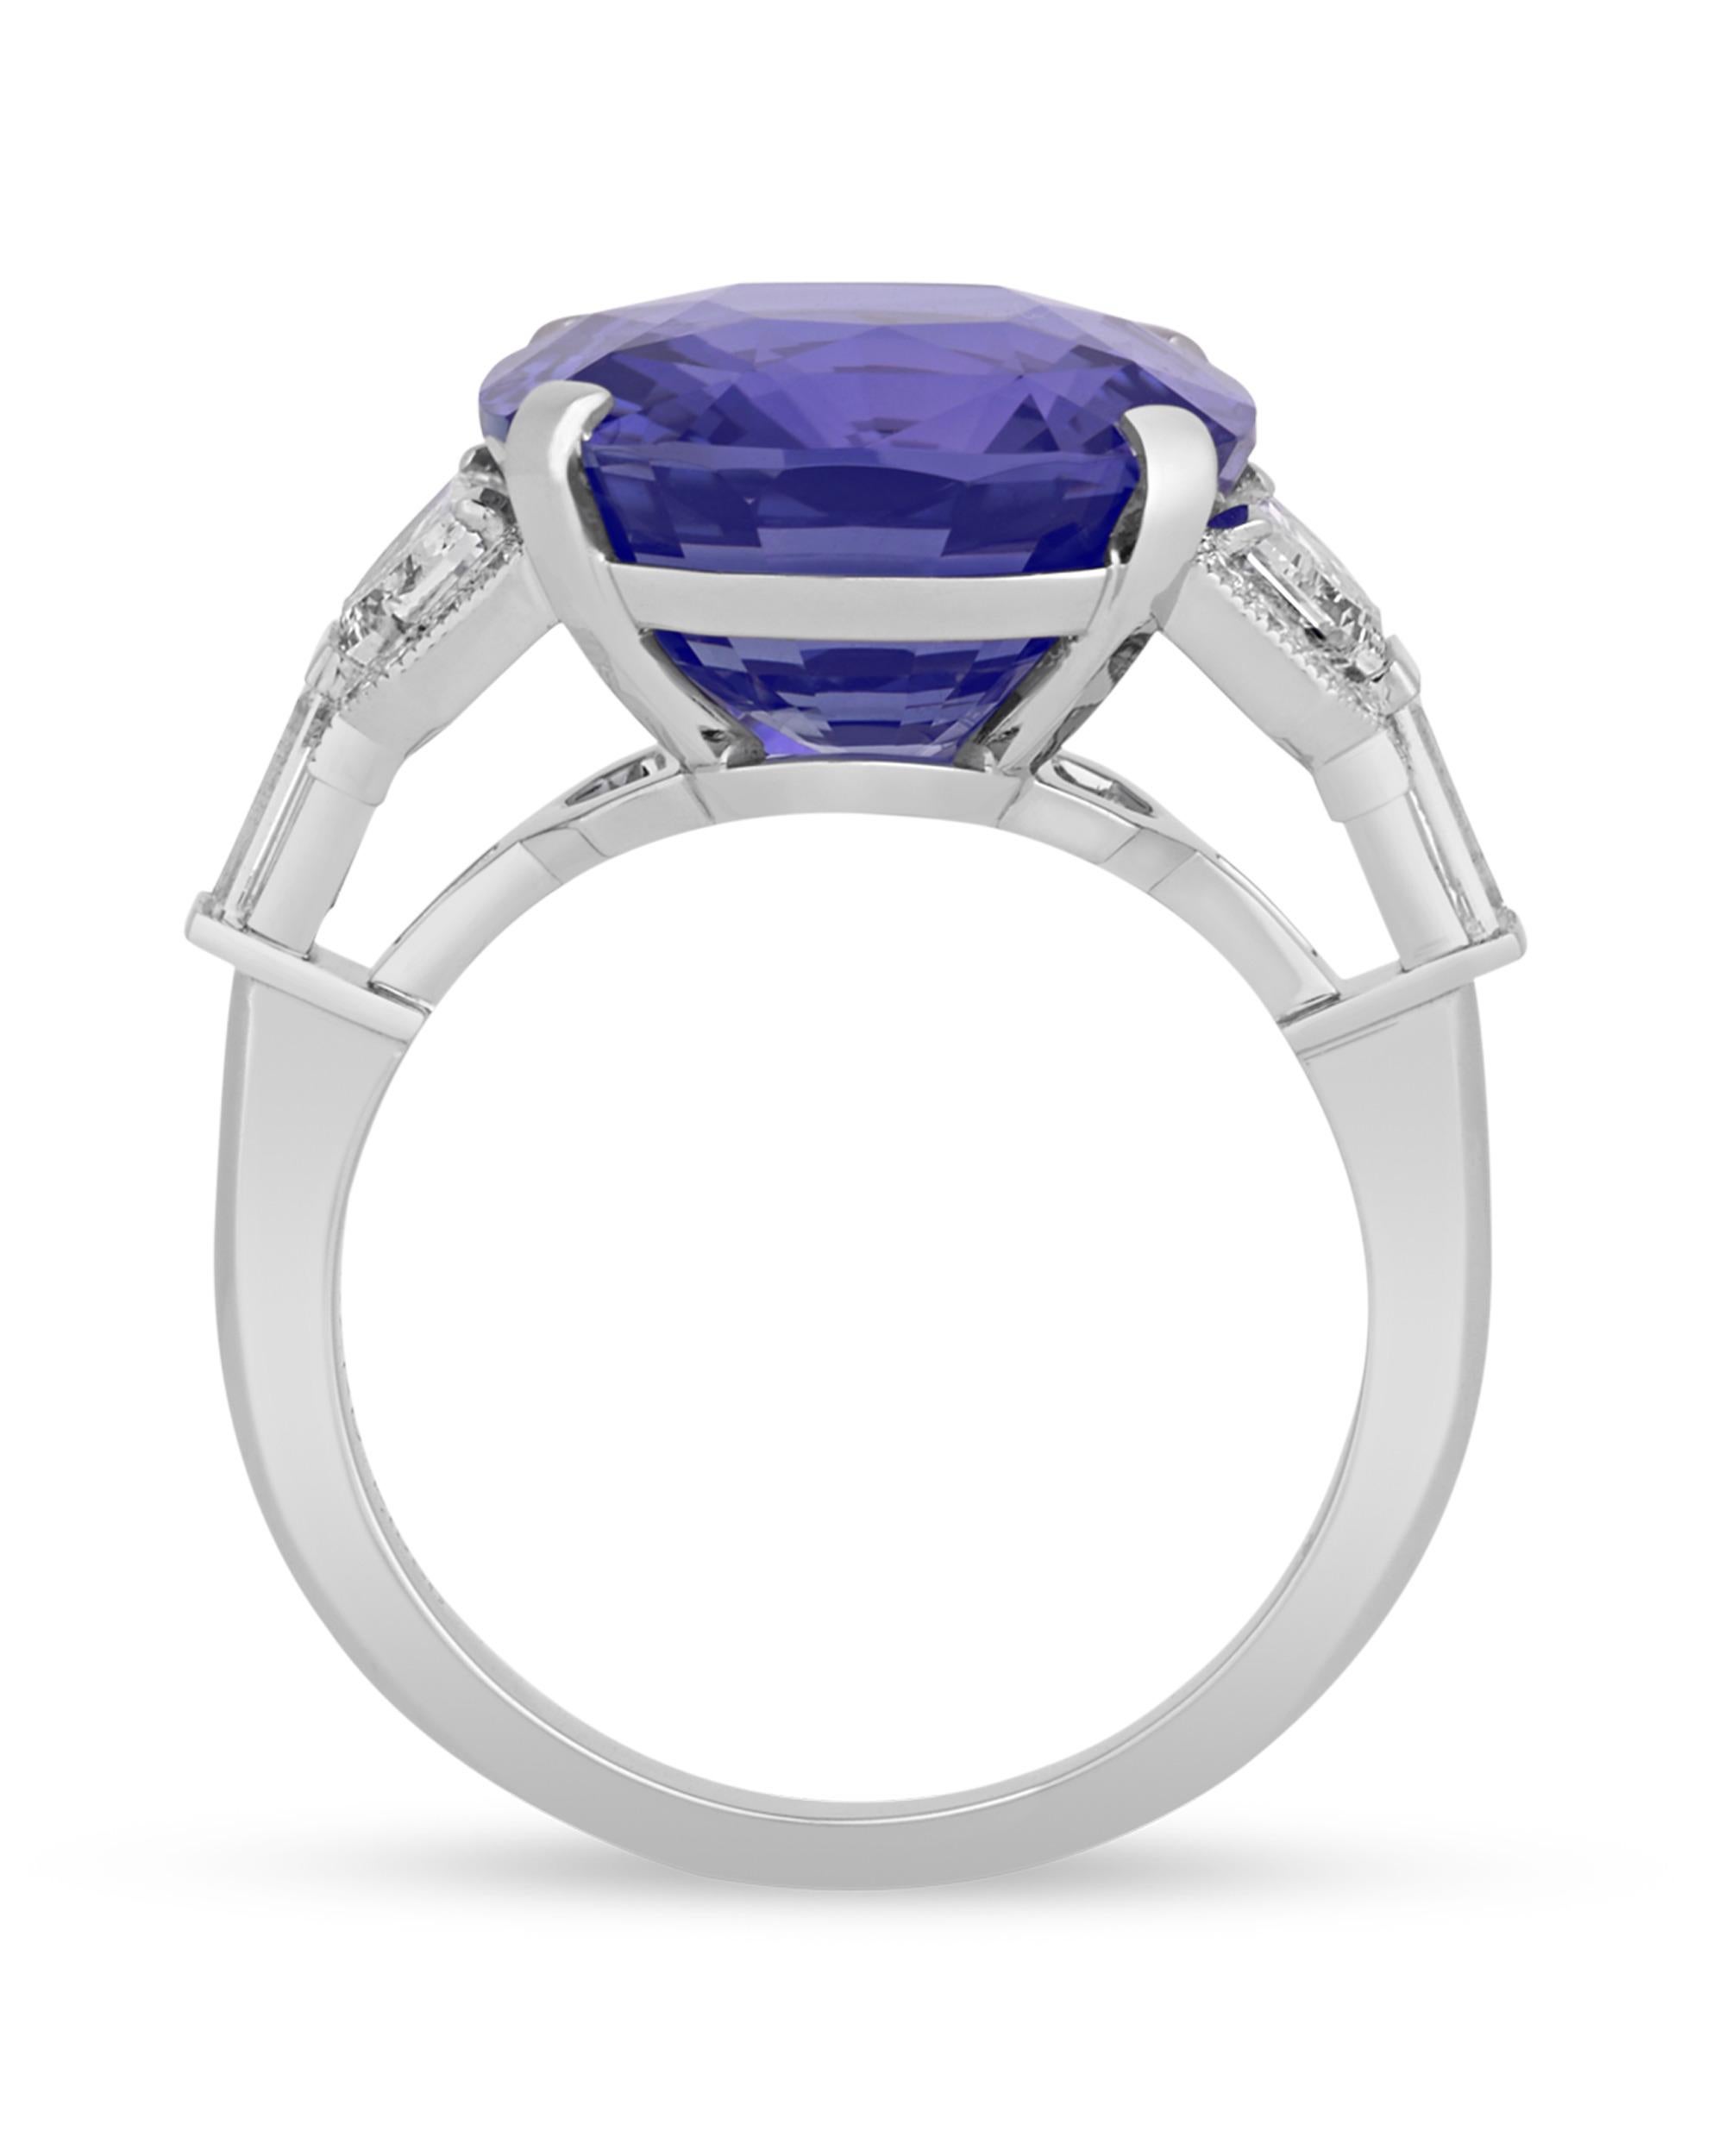 purple sapphire jewelry